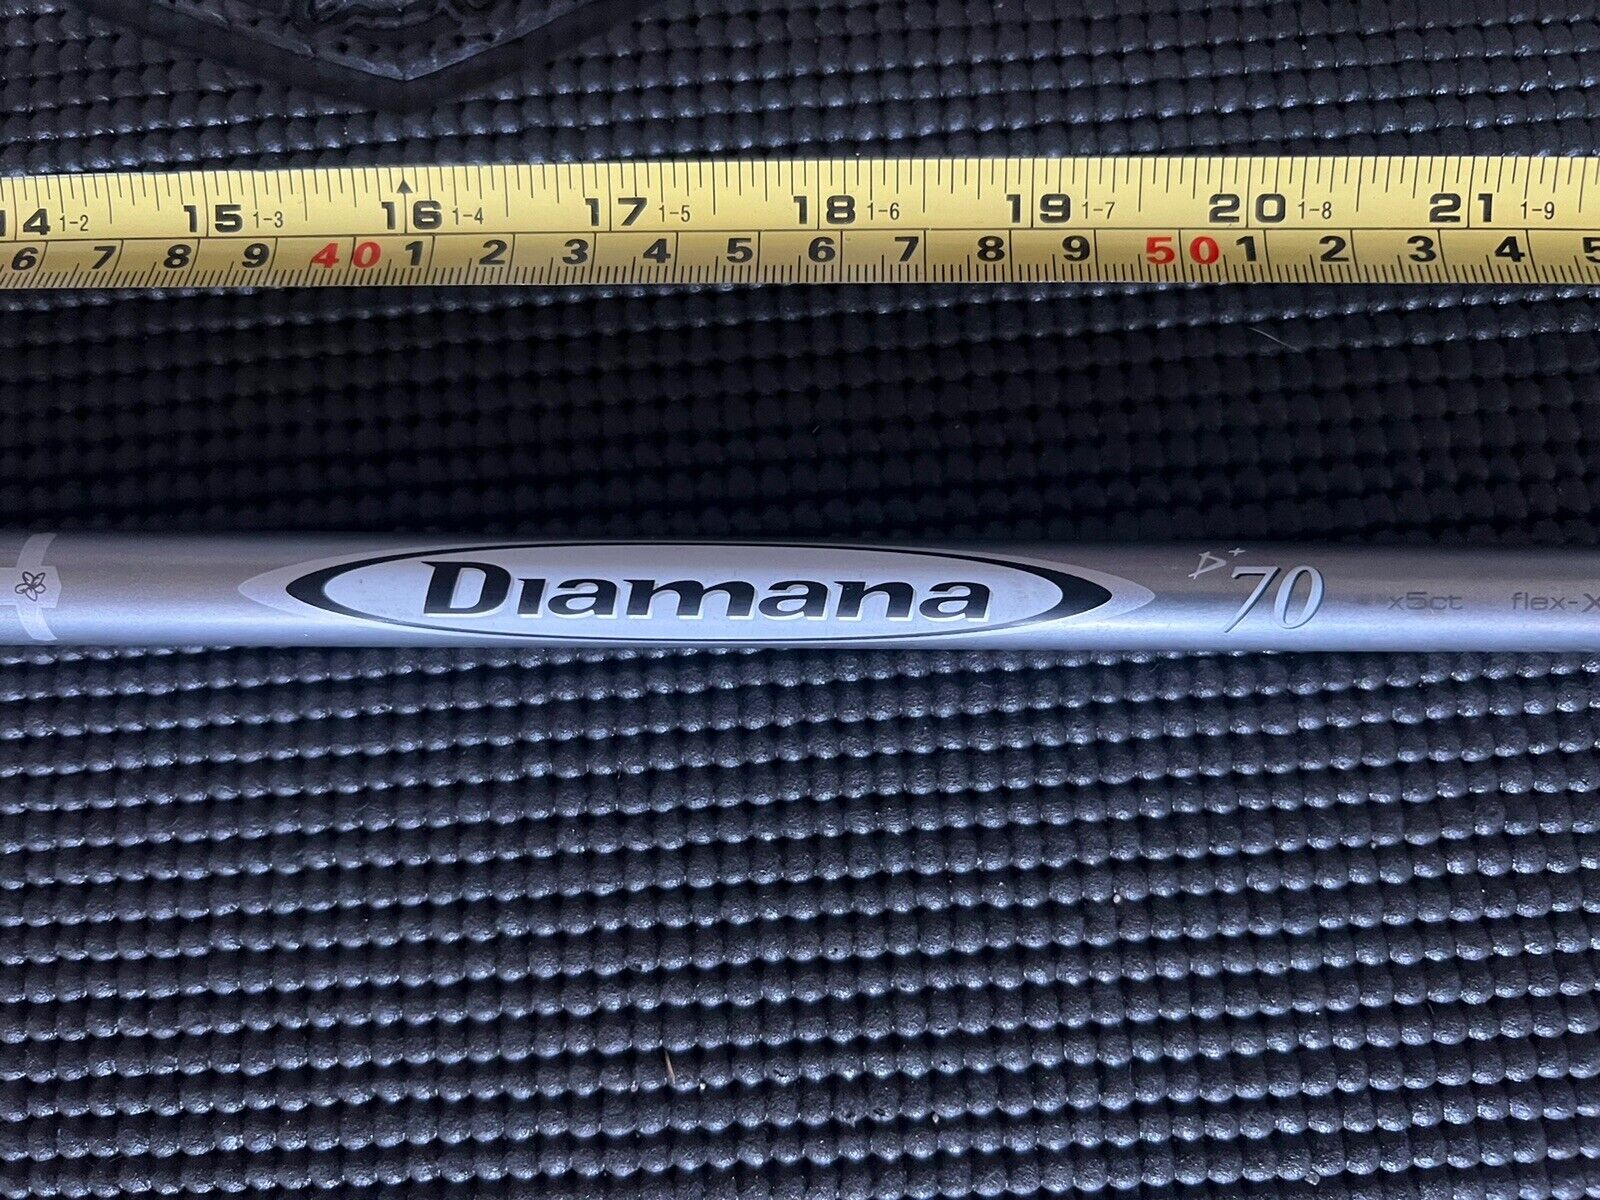 Mitsubishi Diamana D+ 70x 43" Driver Extra Stiff Shaft PING G410/G425/G430